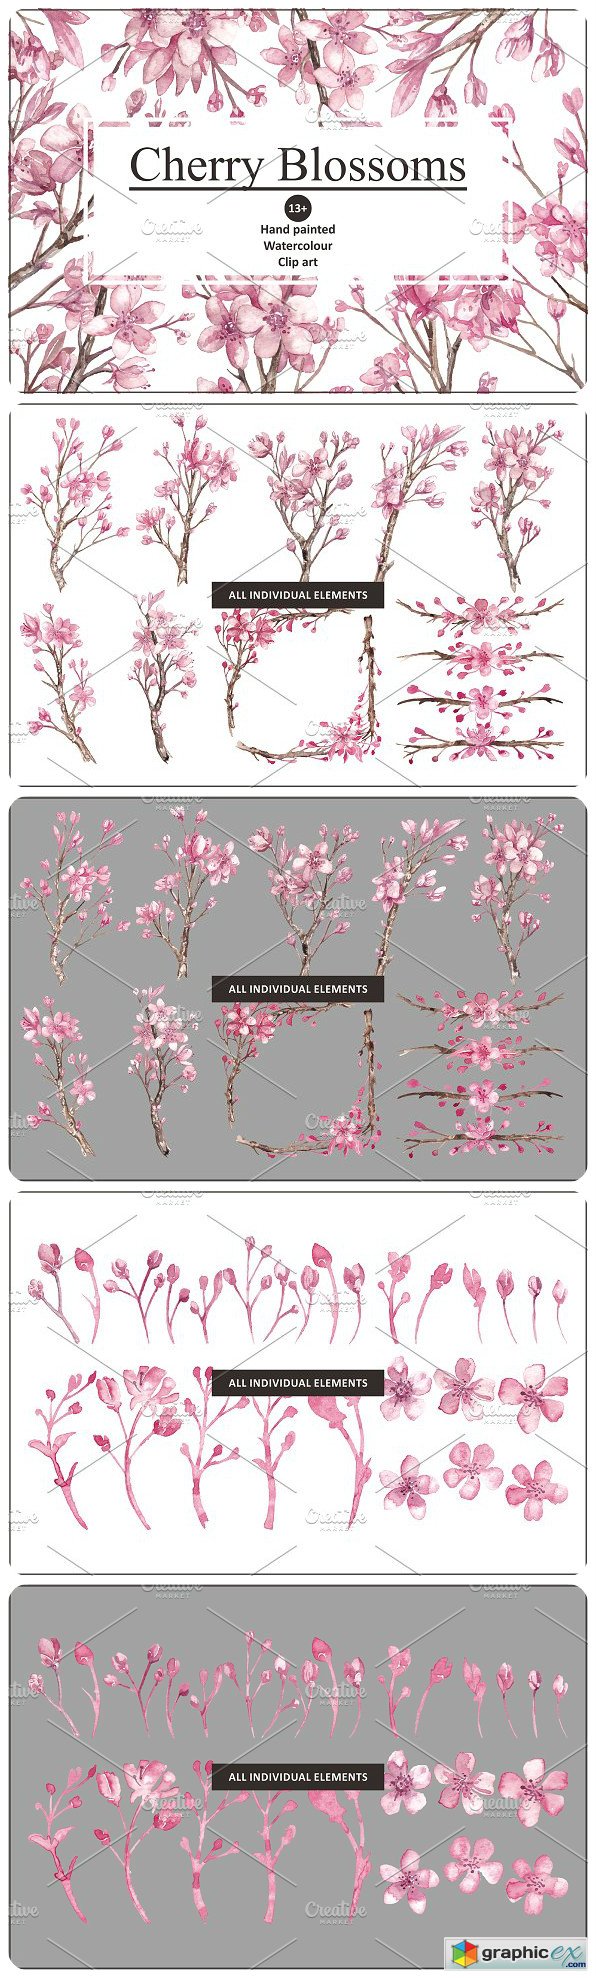 Cherry Blossom Watercolour clipart